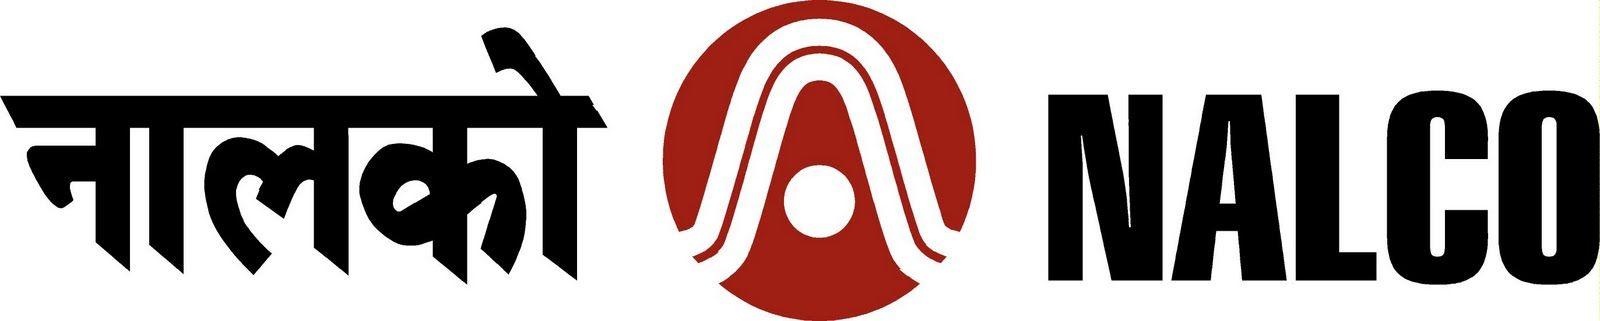 Nalco Logo - NALCO Logo - NALCO Logo Vector | Free Indian Logos